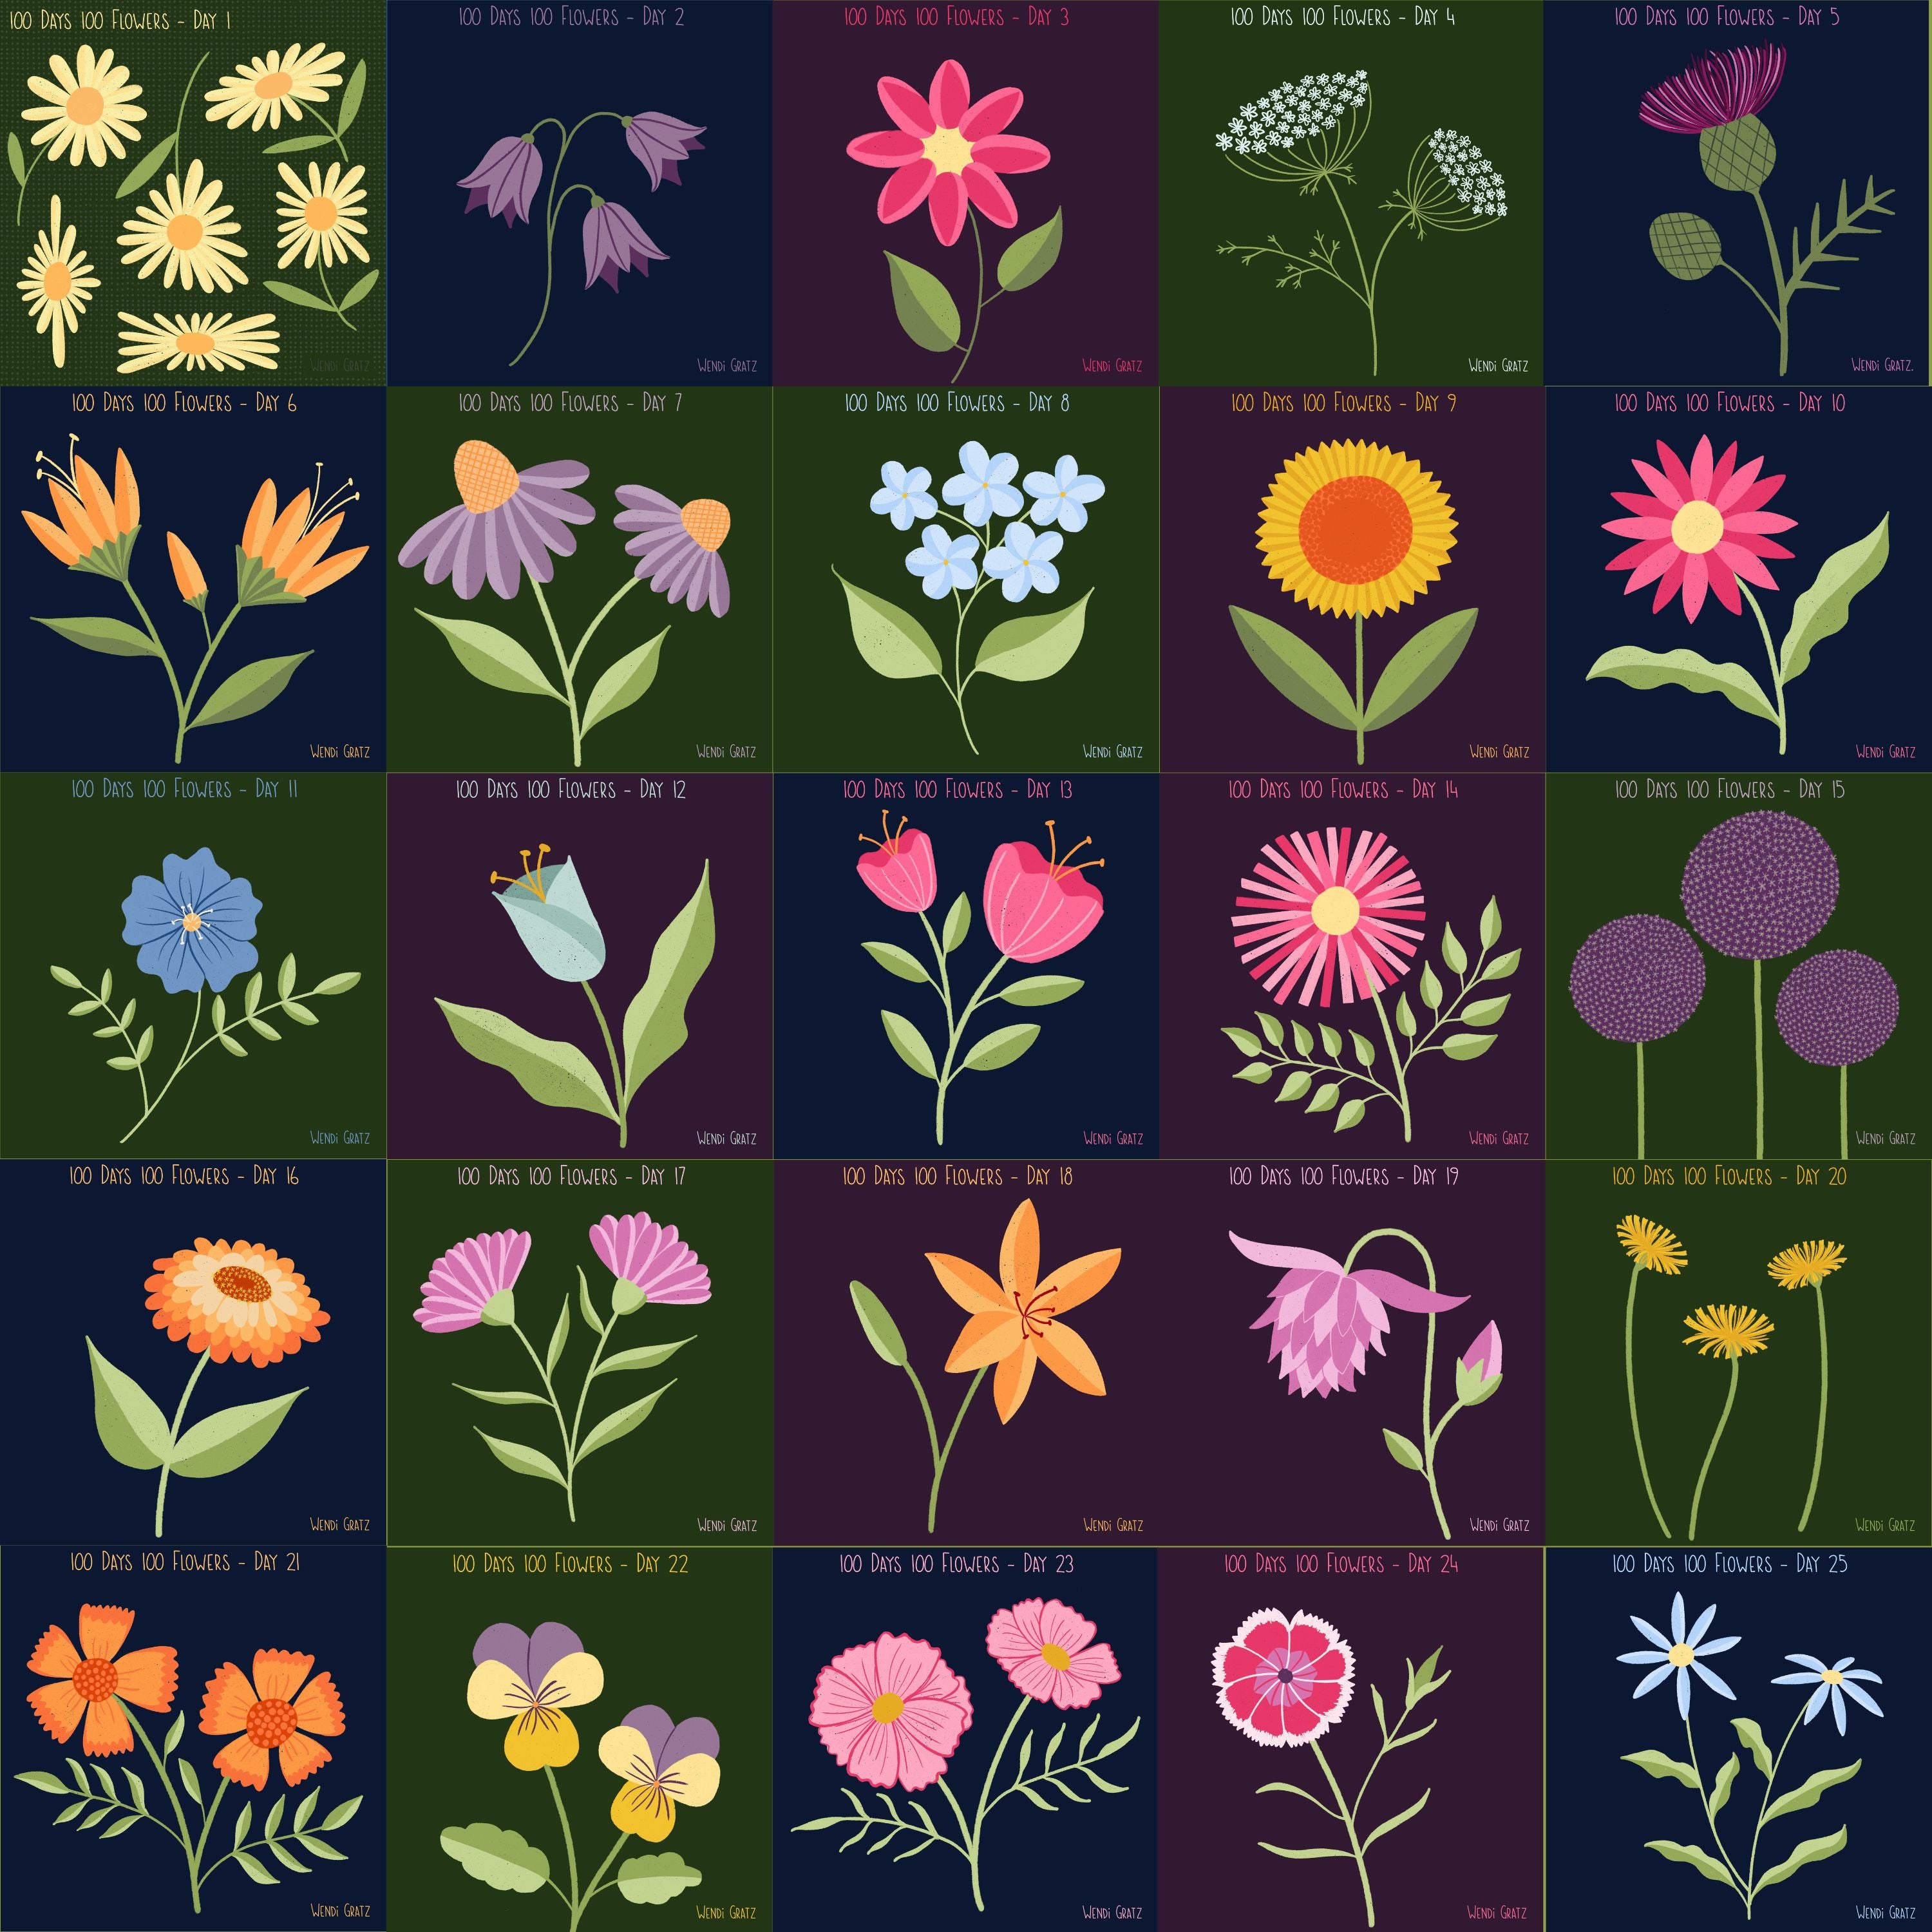 25 Flower - Clip Art Bundle